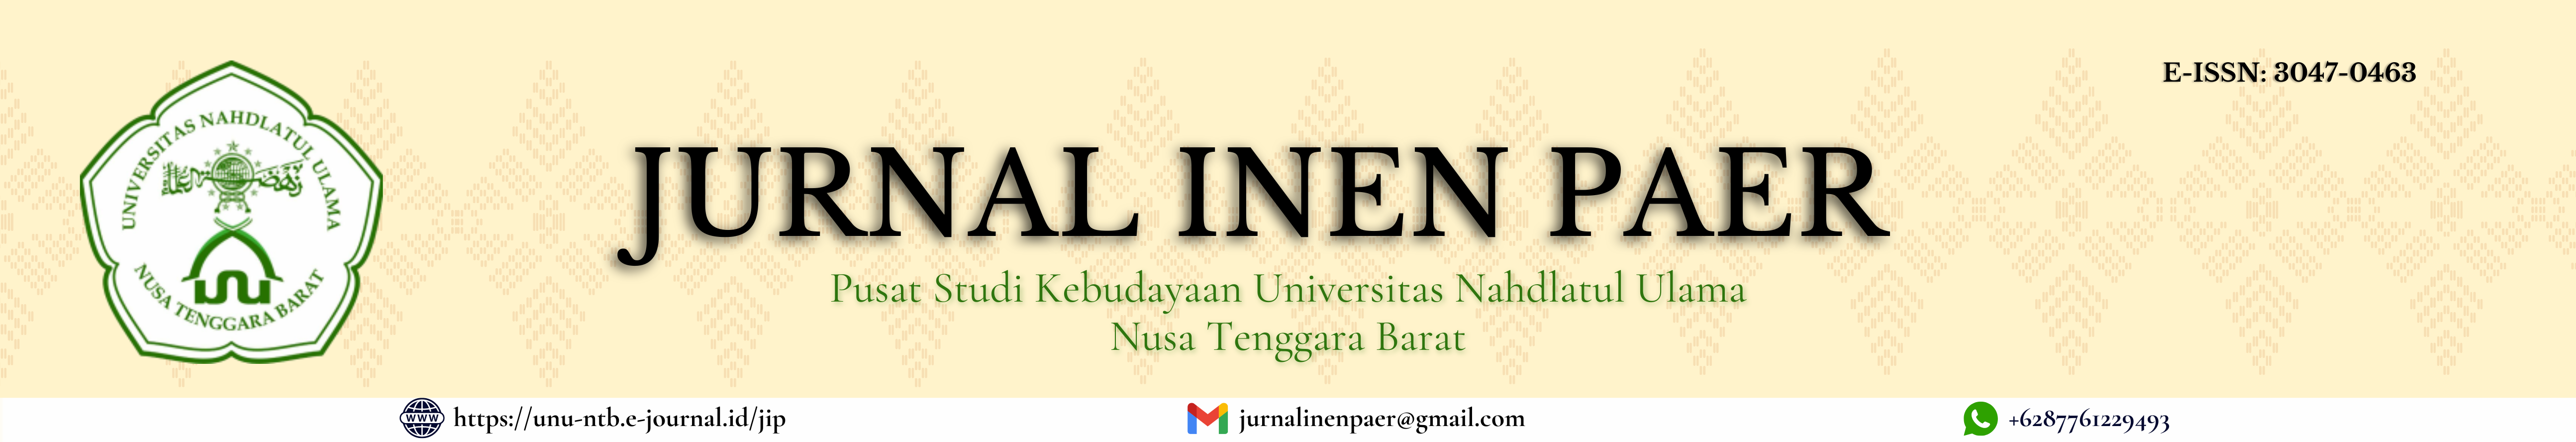 Pusat Studi Kebudayaan Universitas Nahdlatul Ulama Nusa Tenggara Barat